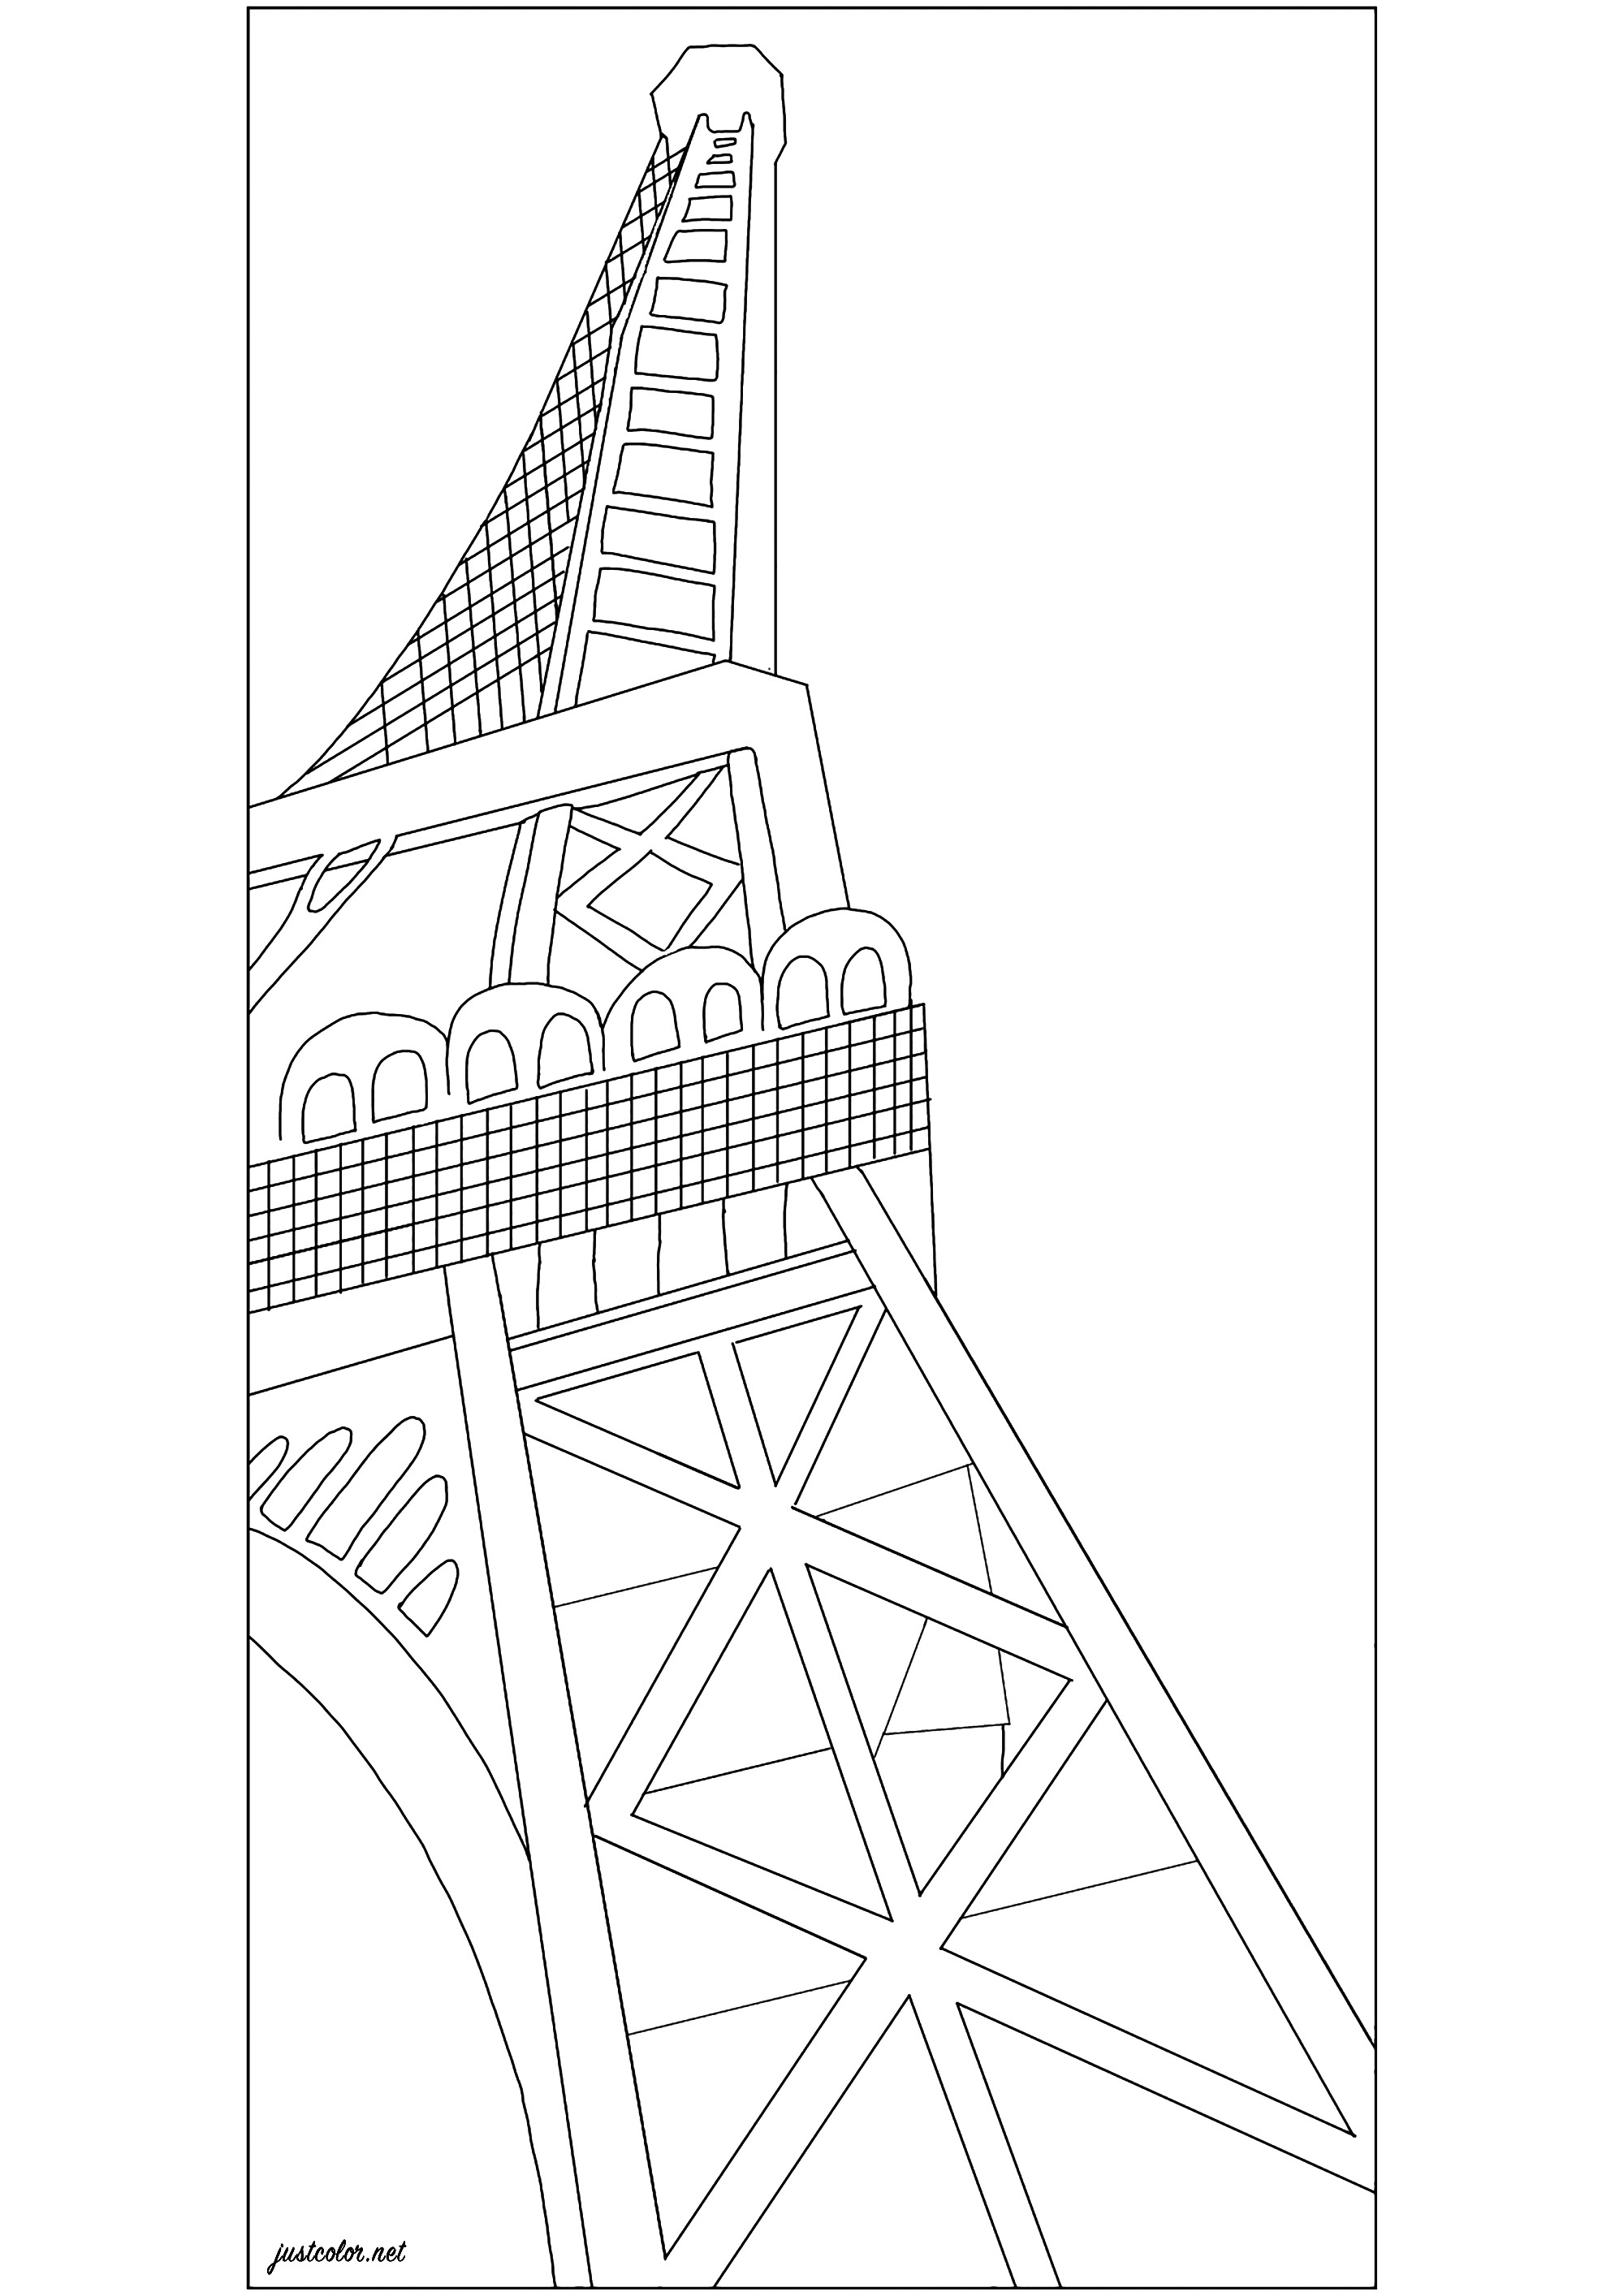 Coloreado basado en 'La Torre Eiffel' (1926) de Robert Delaunay. La Torre Eiffel, construida por Gustave Eiffel en 1889, se convirtió en un símbolo de modernidad que fascinó al pintor Robert Delaunay. Tras desmenuzarla en una importante serie cubista a principios de la década de 1910, el artista la glorificó utilizando colores extravagantes y un poderoso efecto de vista desde abajo, a menudo adoptado por los fotógrafos de la época, Artista : Jade F